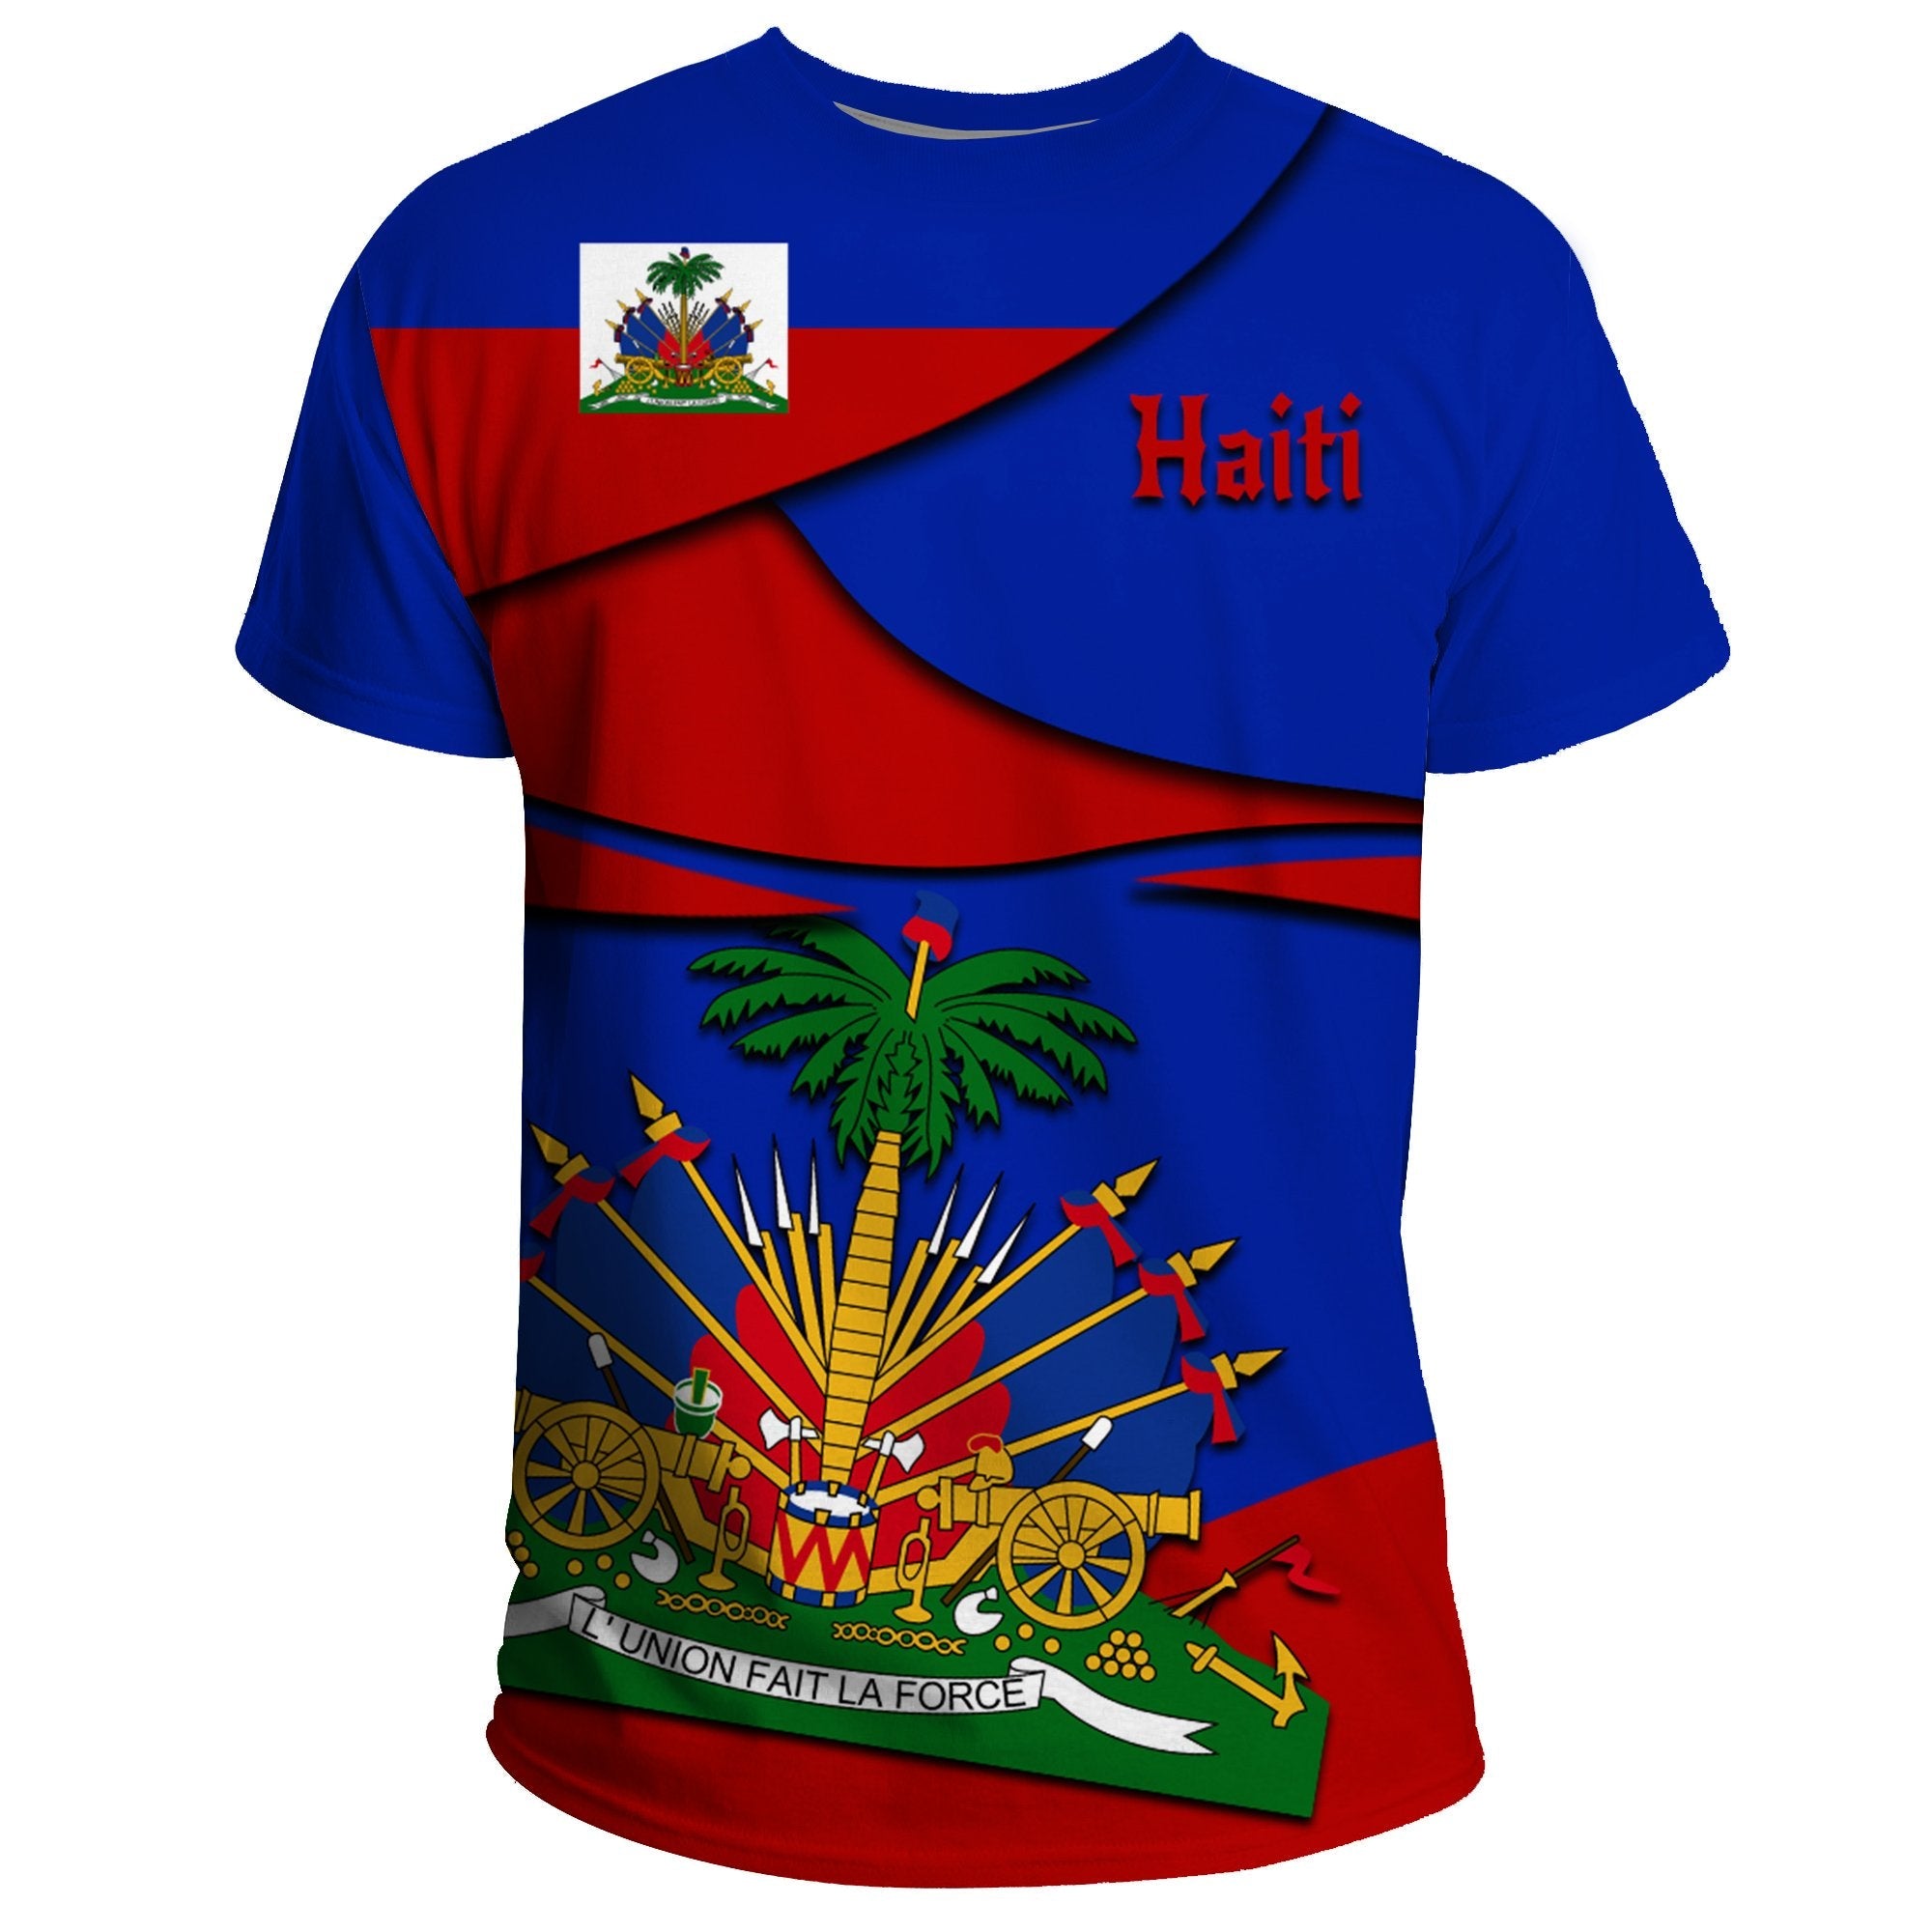 haiti-t-shirt-coat-of-arms